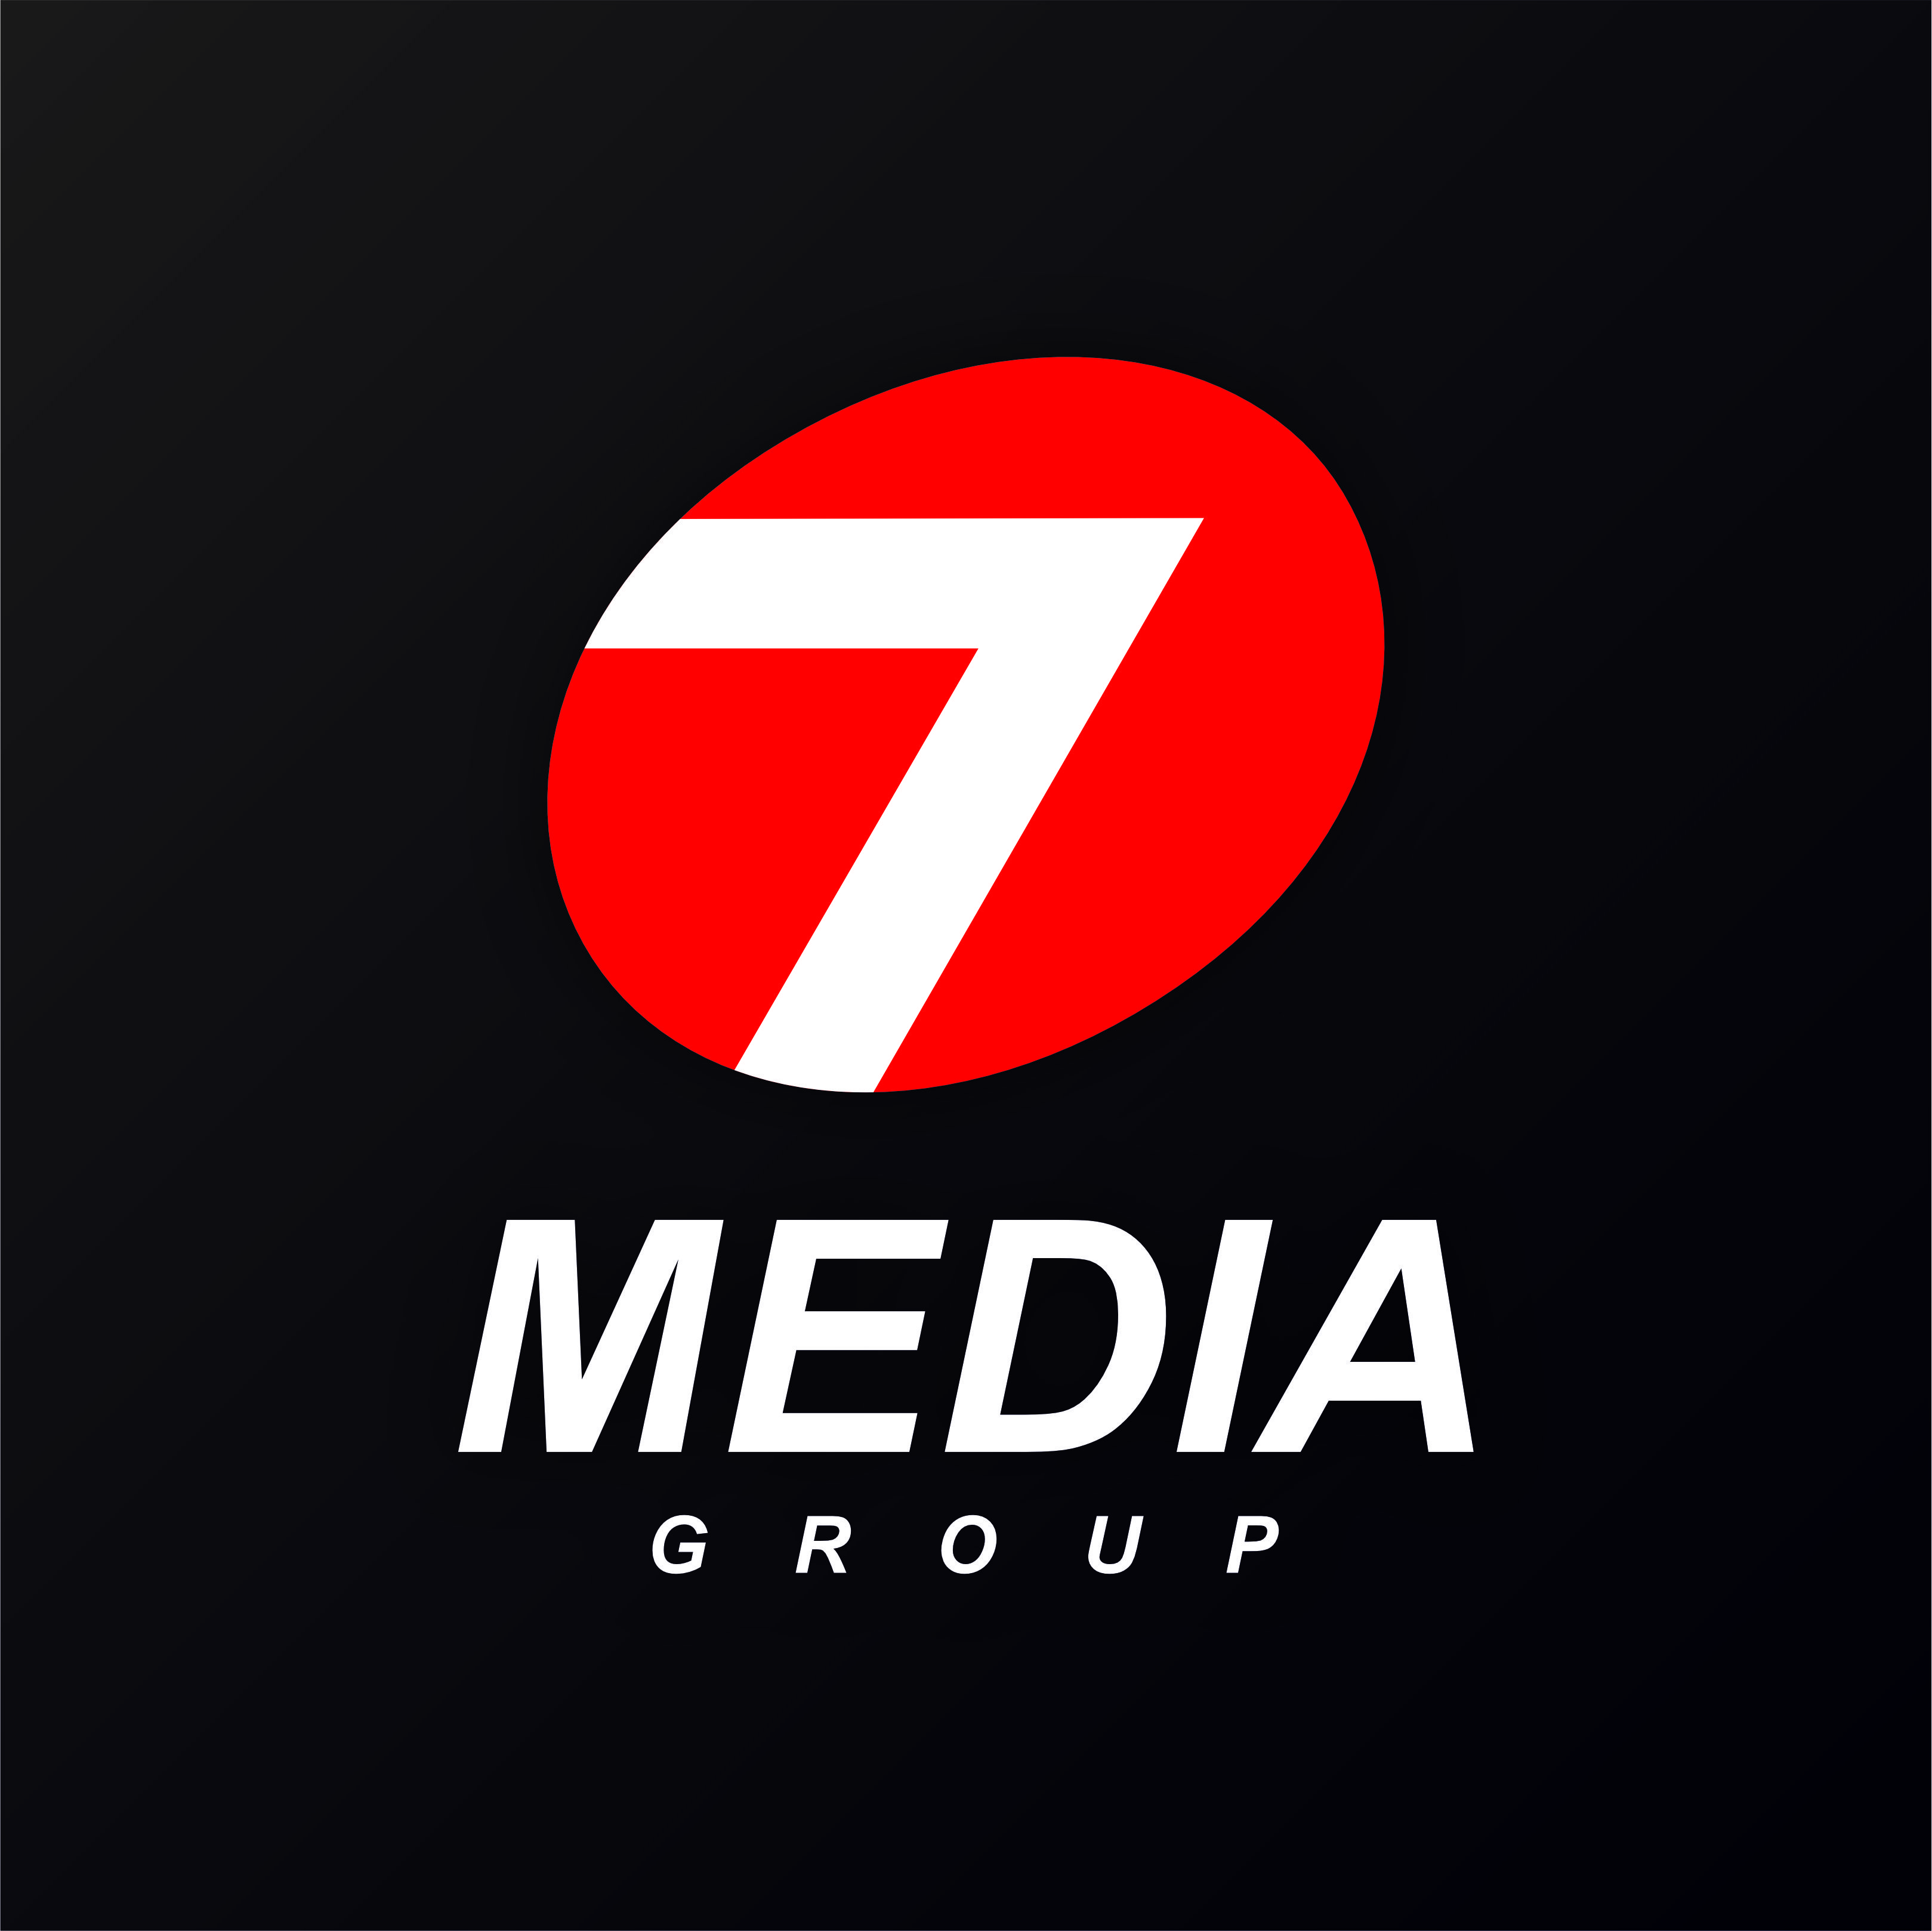 7Media Group kompaniyasi Oʻzbekistondagi eng yirik reklama LED ekranlaridan birini oʻrnatdi.